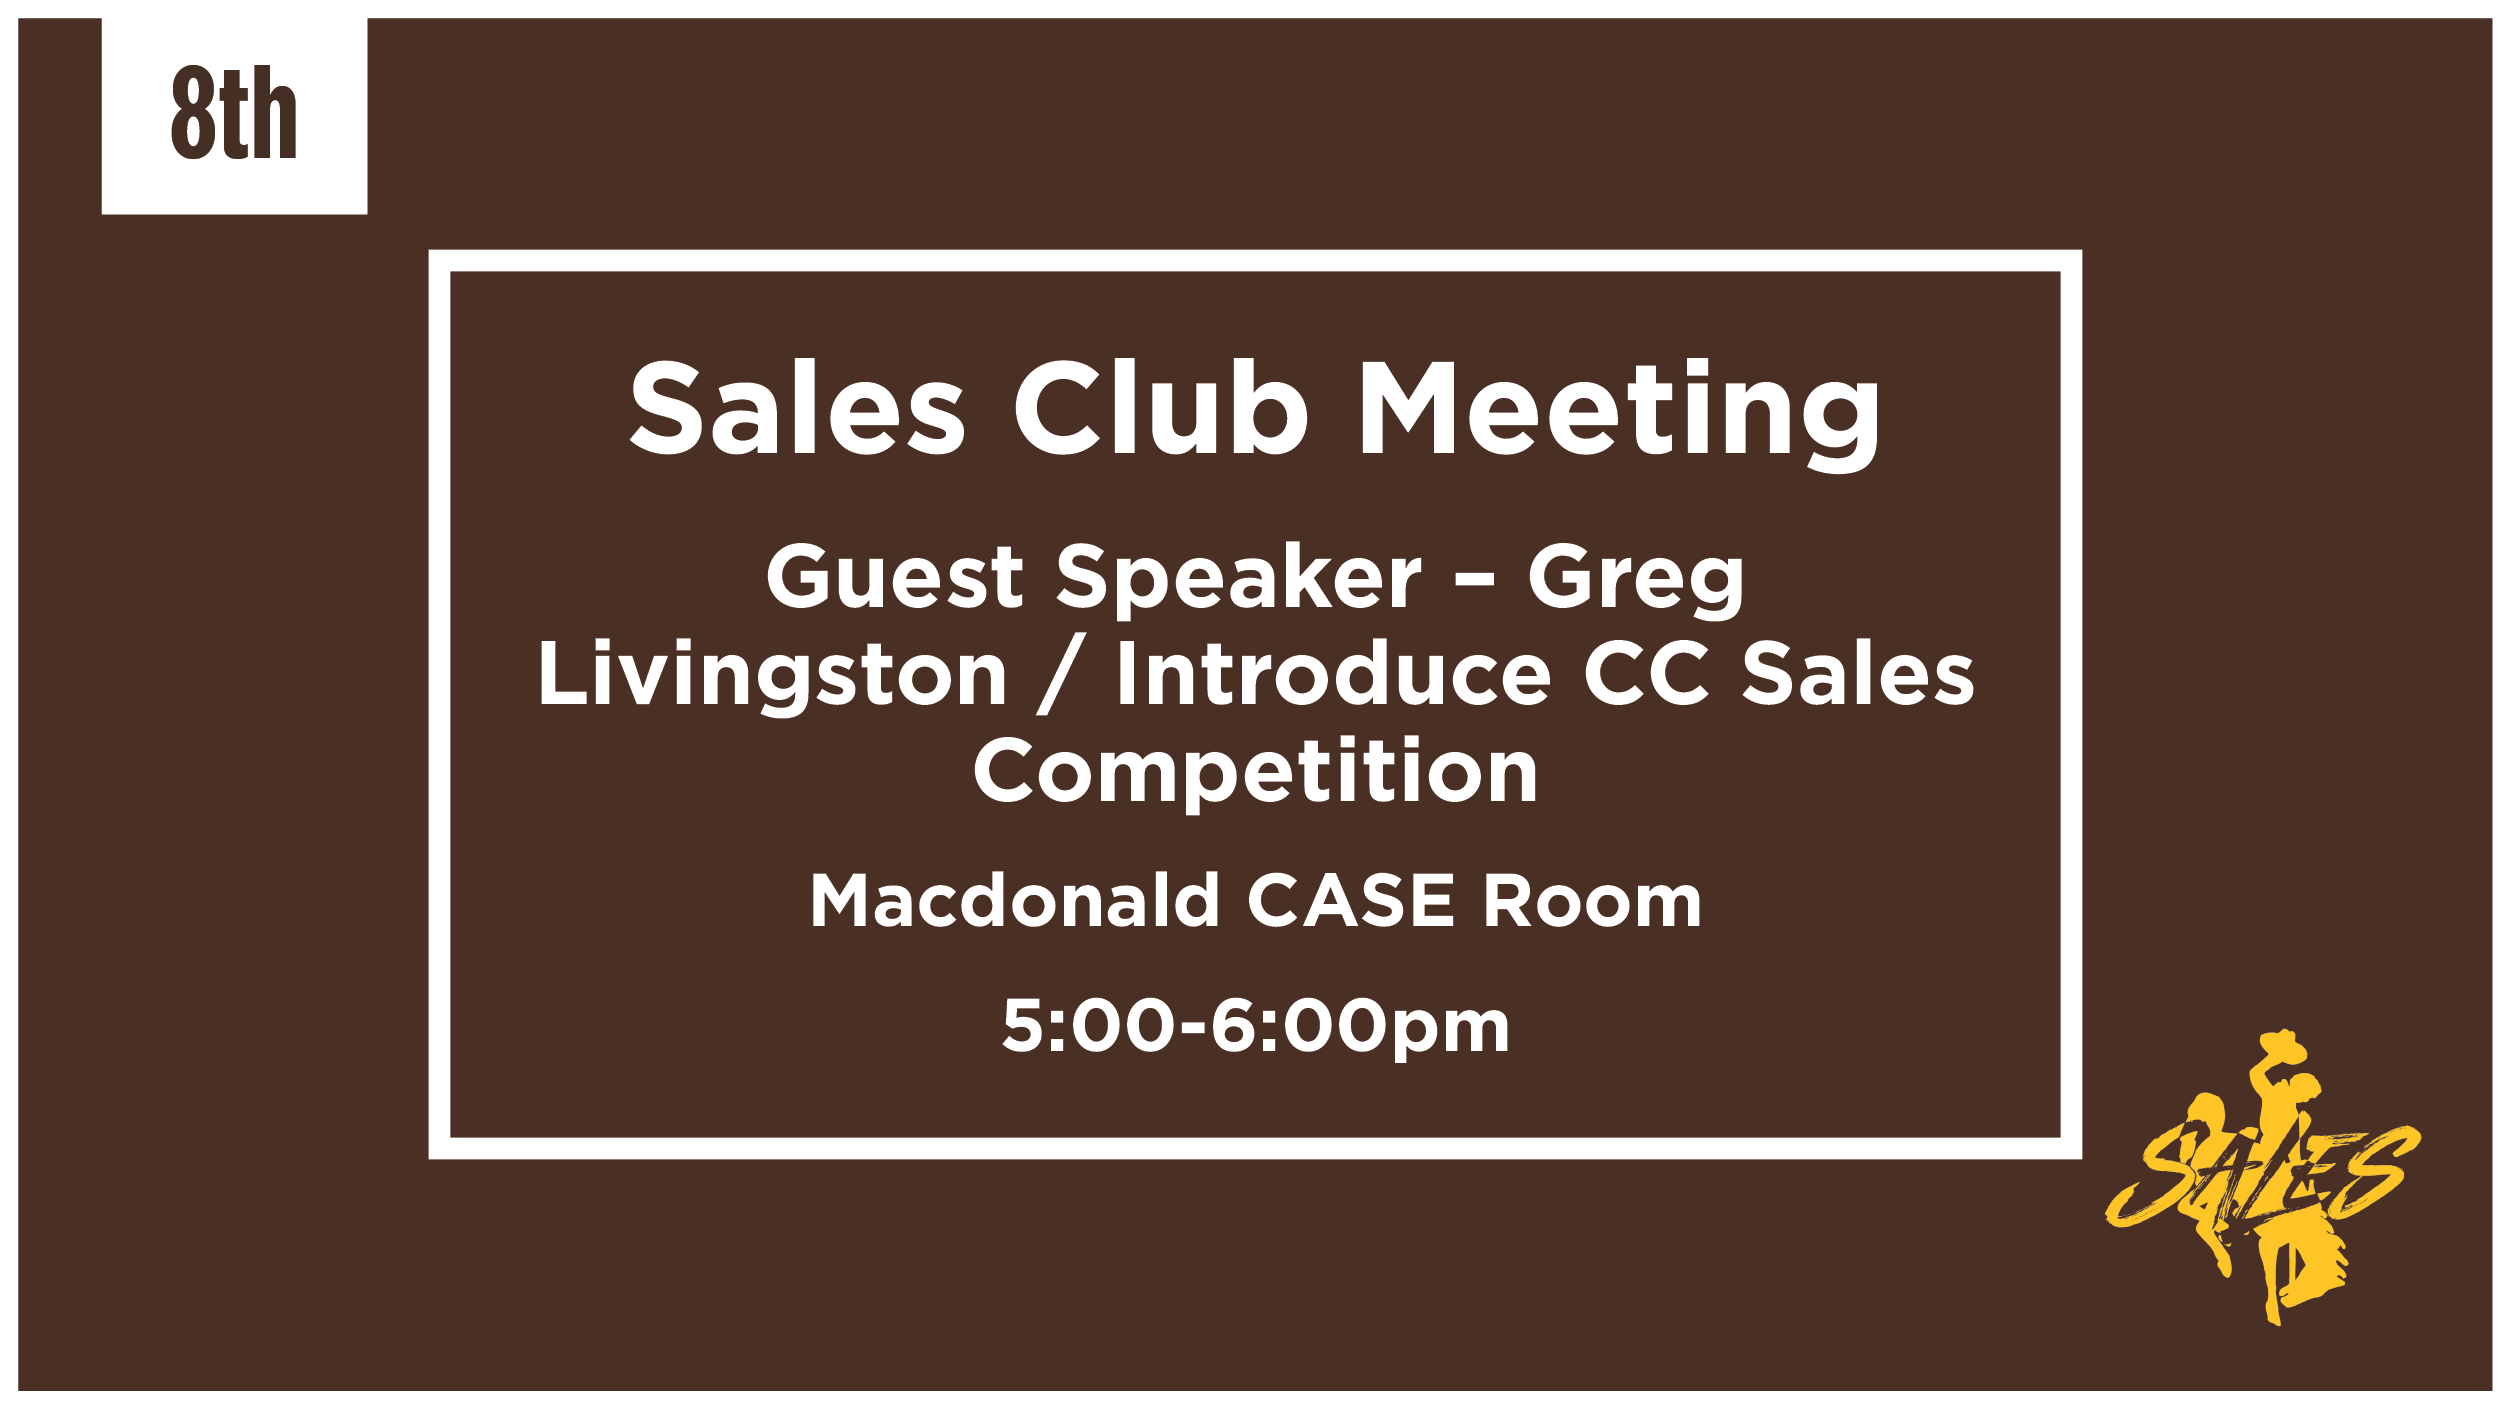 Sales Club Meeting Mar 8